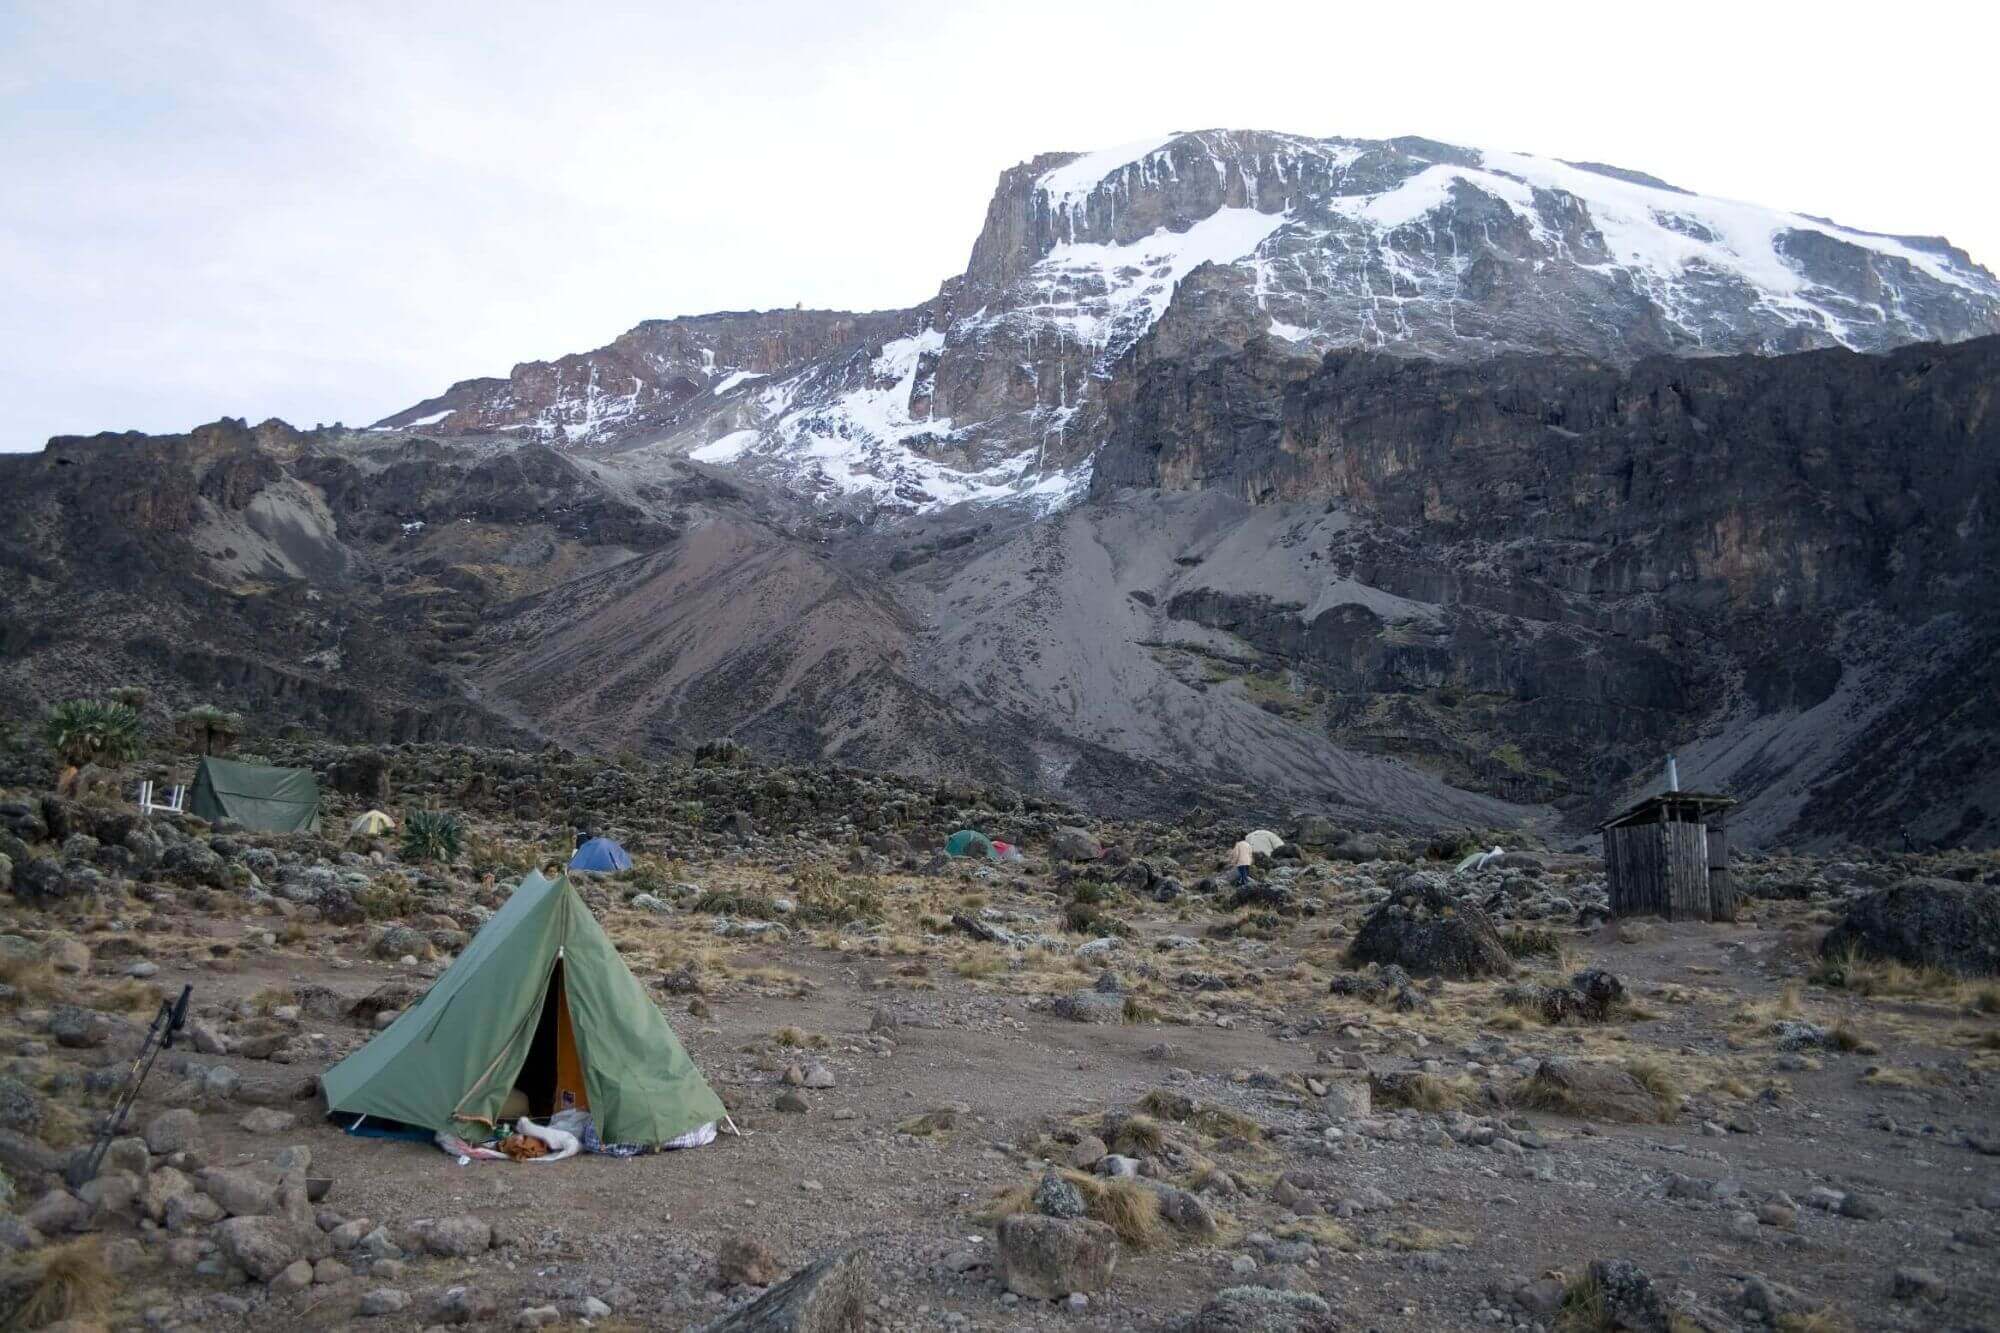 Nygaard,Stig-Kilimanjaro-Machame5 - 